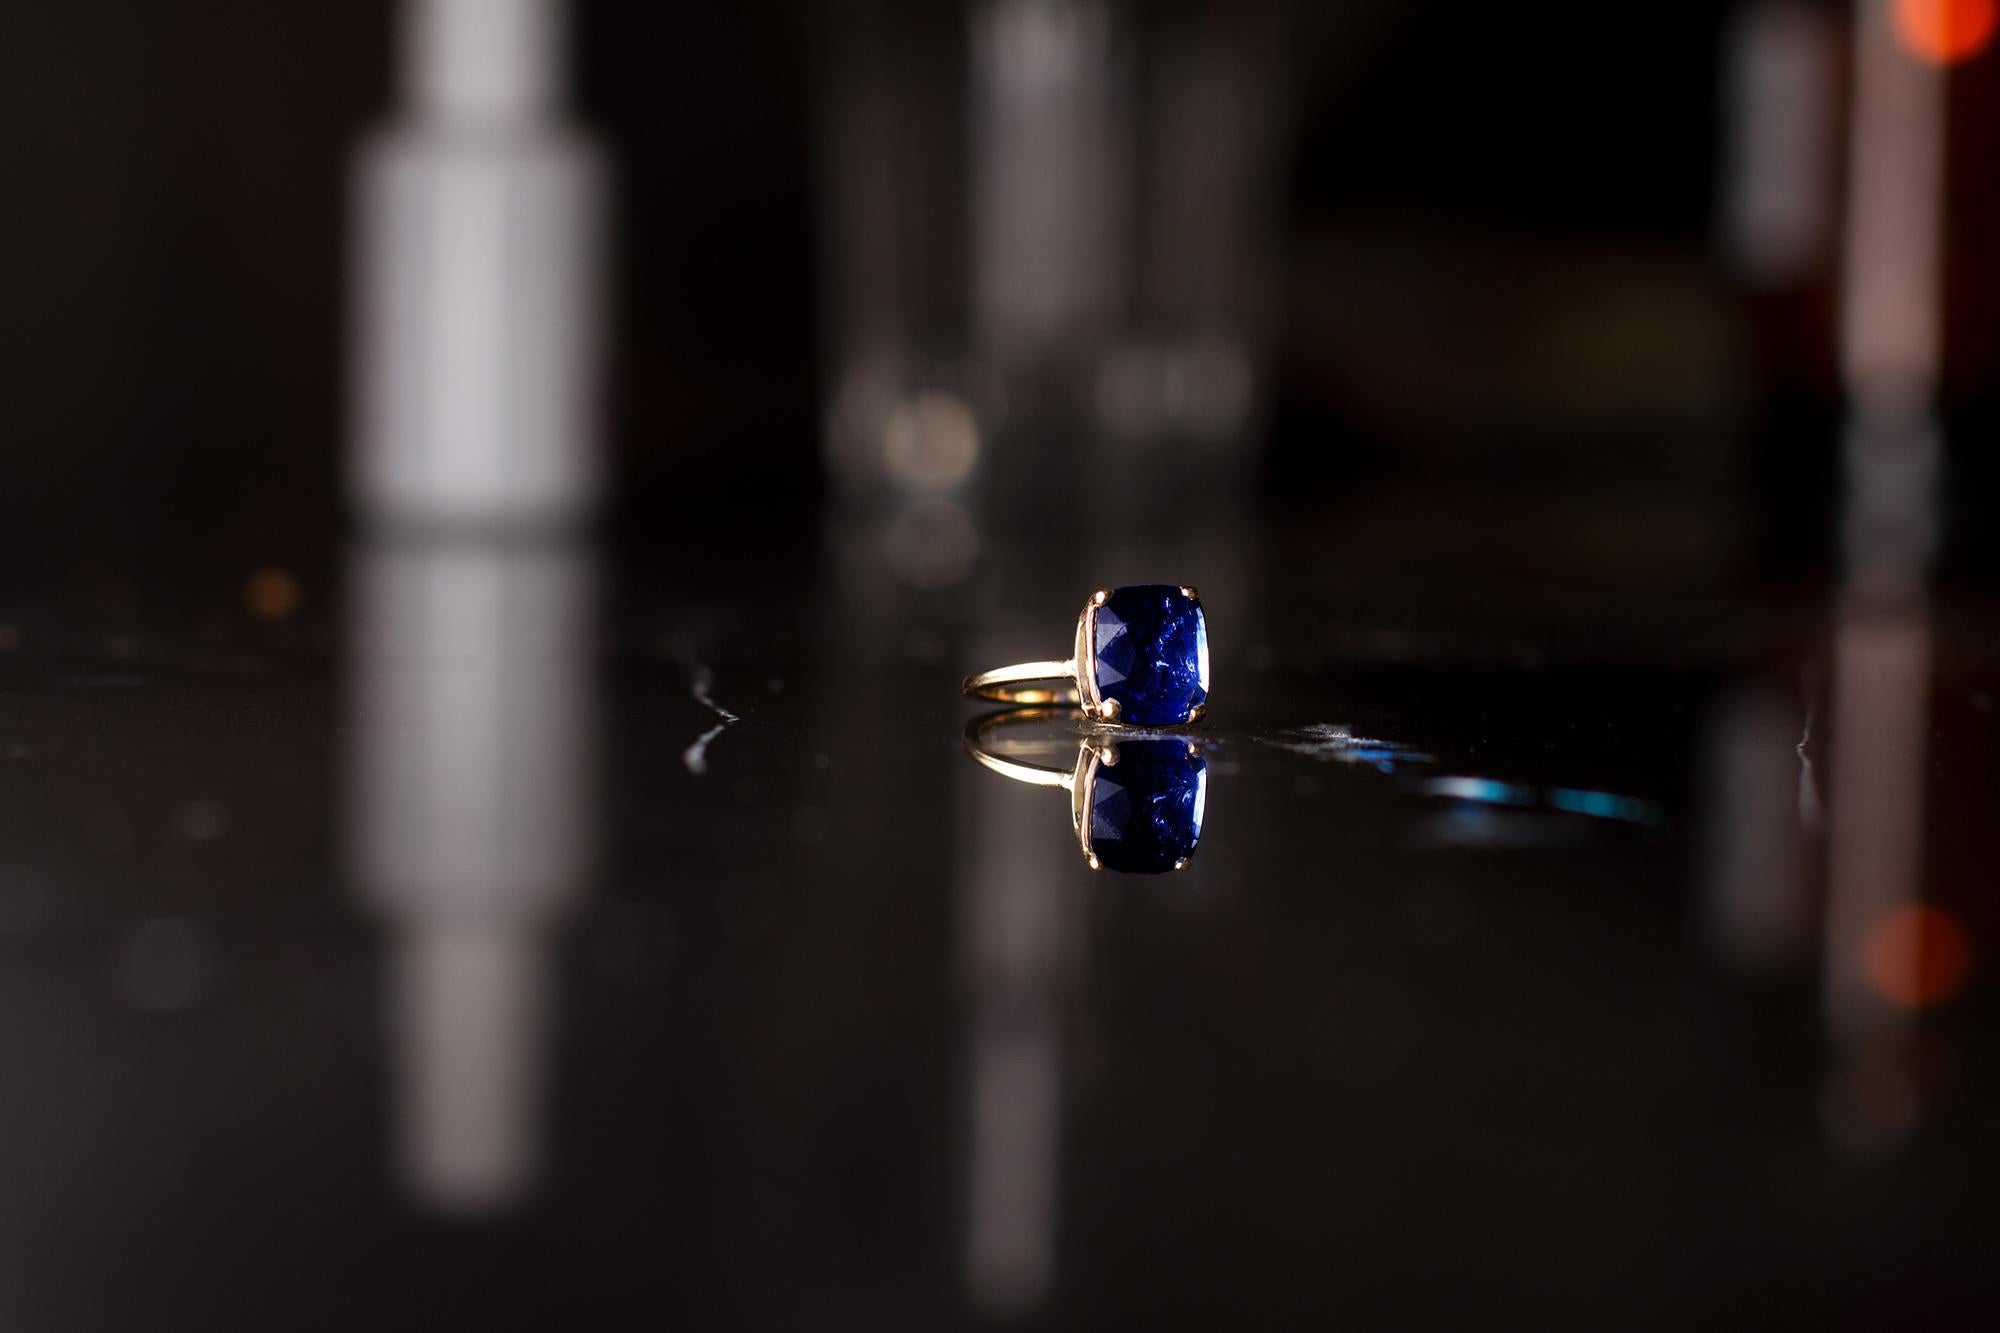 Dieser zeitgenössische Ring ist aus 18 Karat Gelbgold mit einem ungeheizten blauen Saphir im Kissenschliff, 2,38 Karat. Es gehört zur Tea Collection, die in der Vogue UA vorgestellt wurde. 

Der Ring ist leicht zu tragen, und der Edelstein zieht die